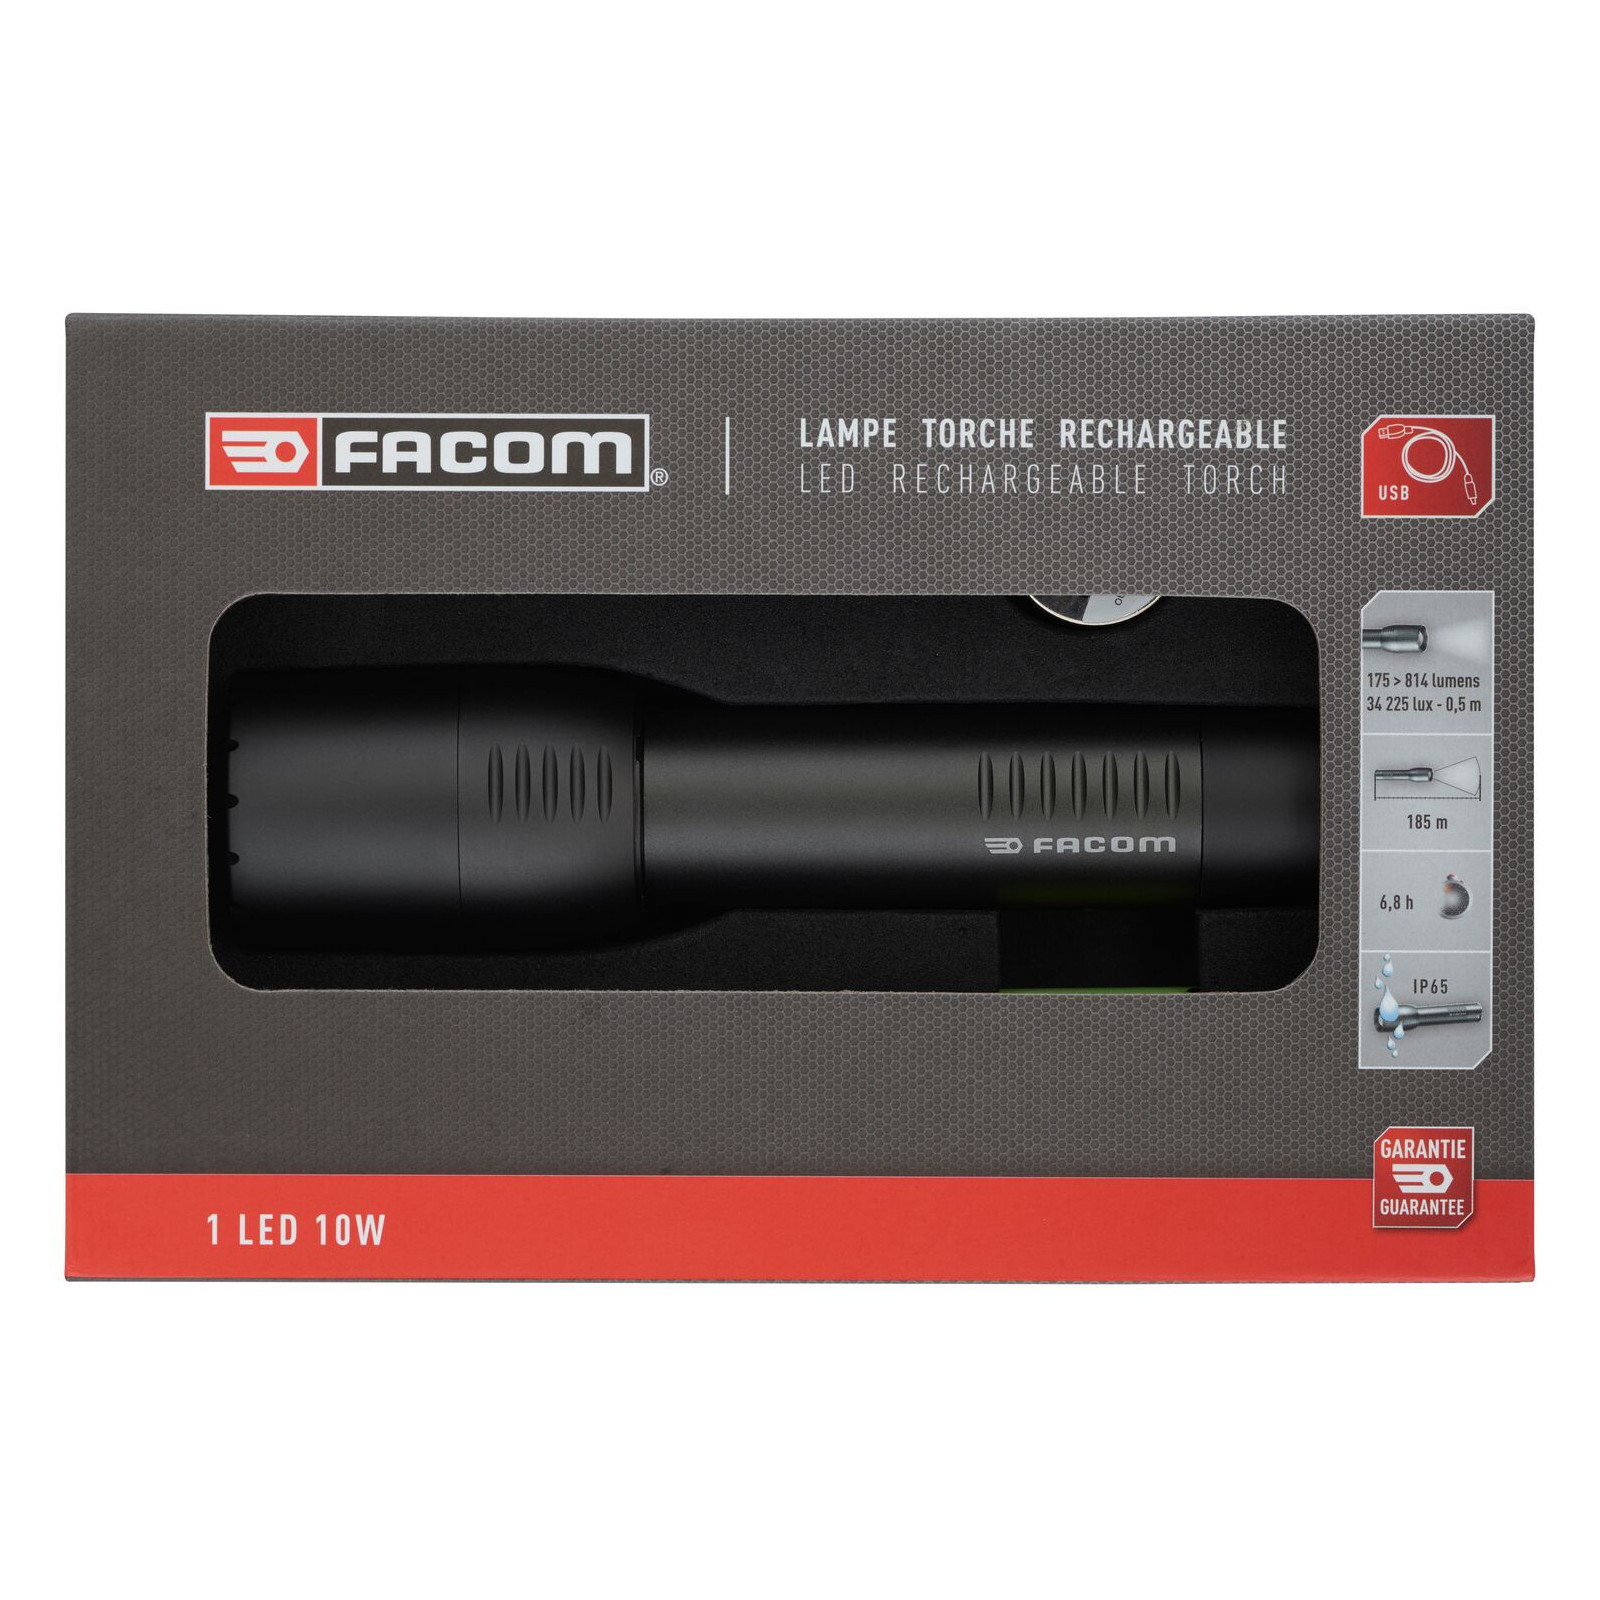 Torche rechargeable compacte - Facom 779.CRTPB